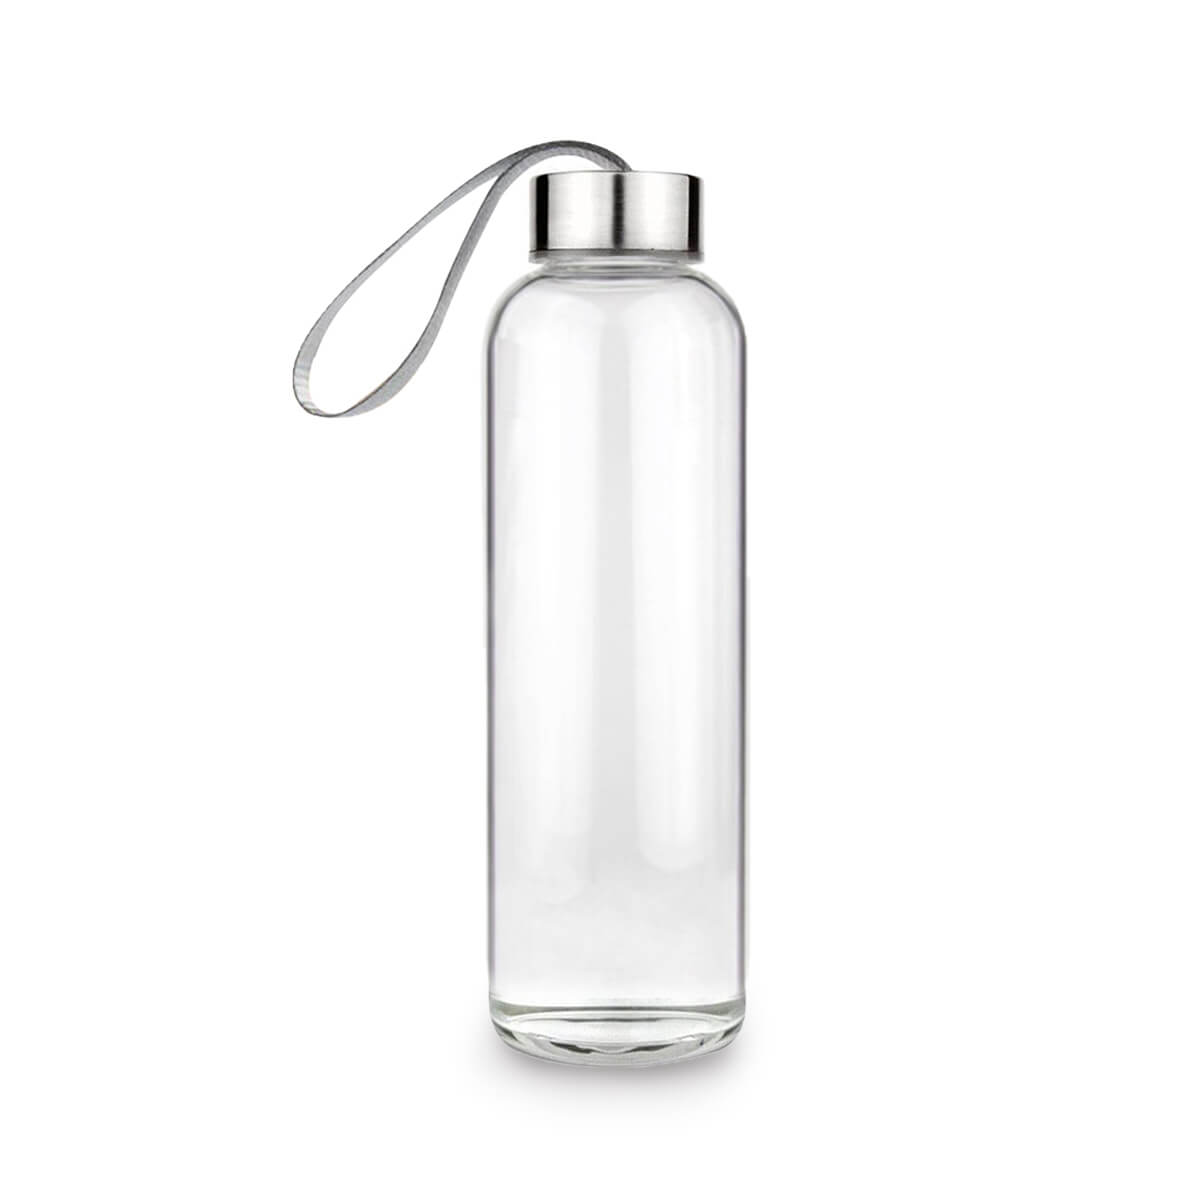 https://www.enkoproducts.com/wp-content/uploads/2021/03/water-glass-bottle.jpg